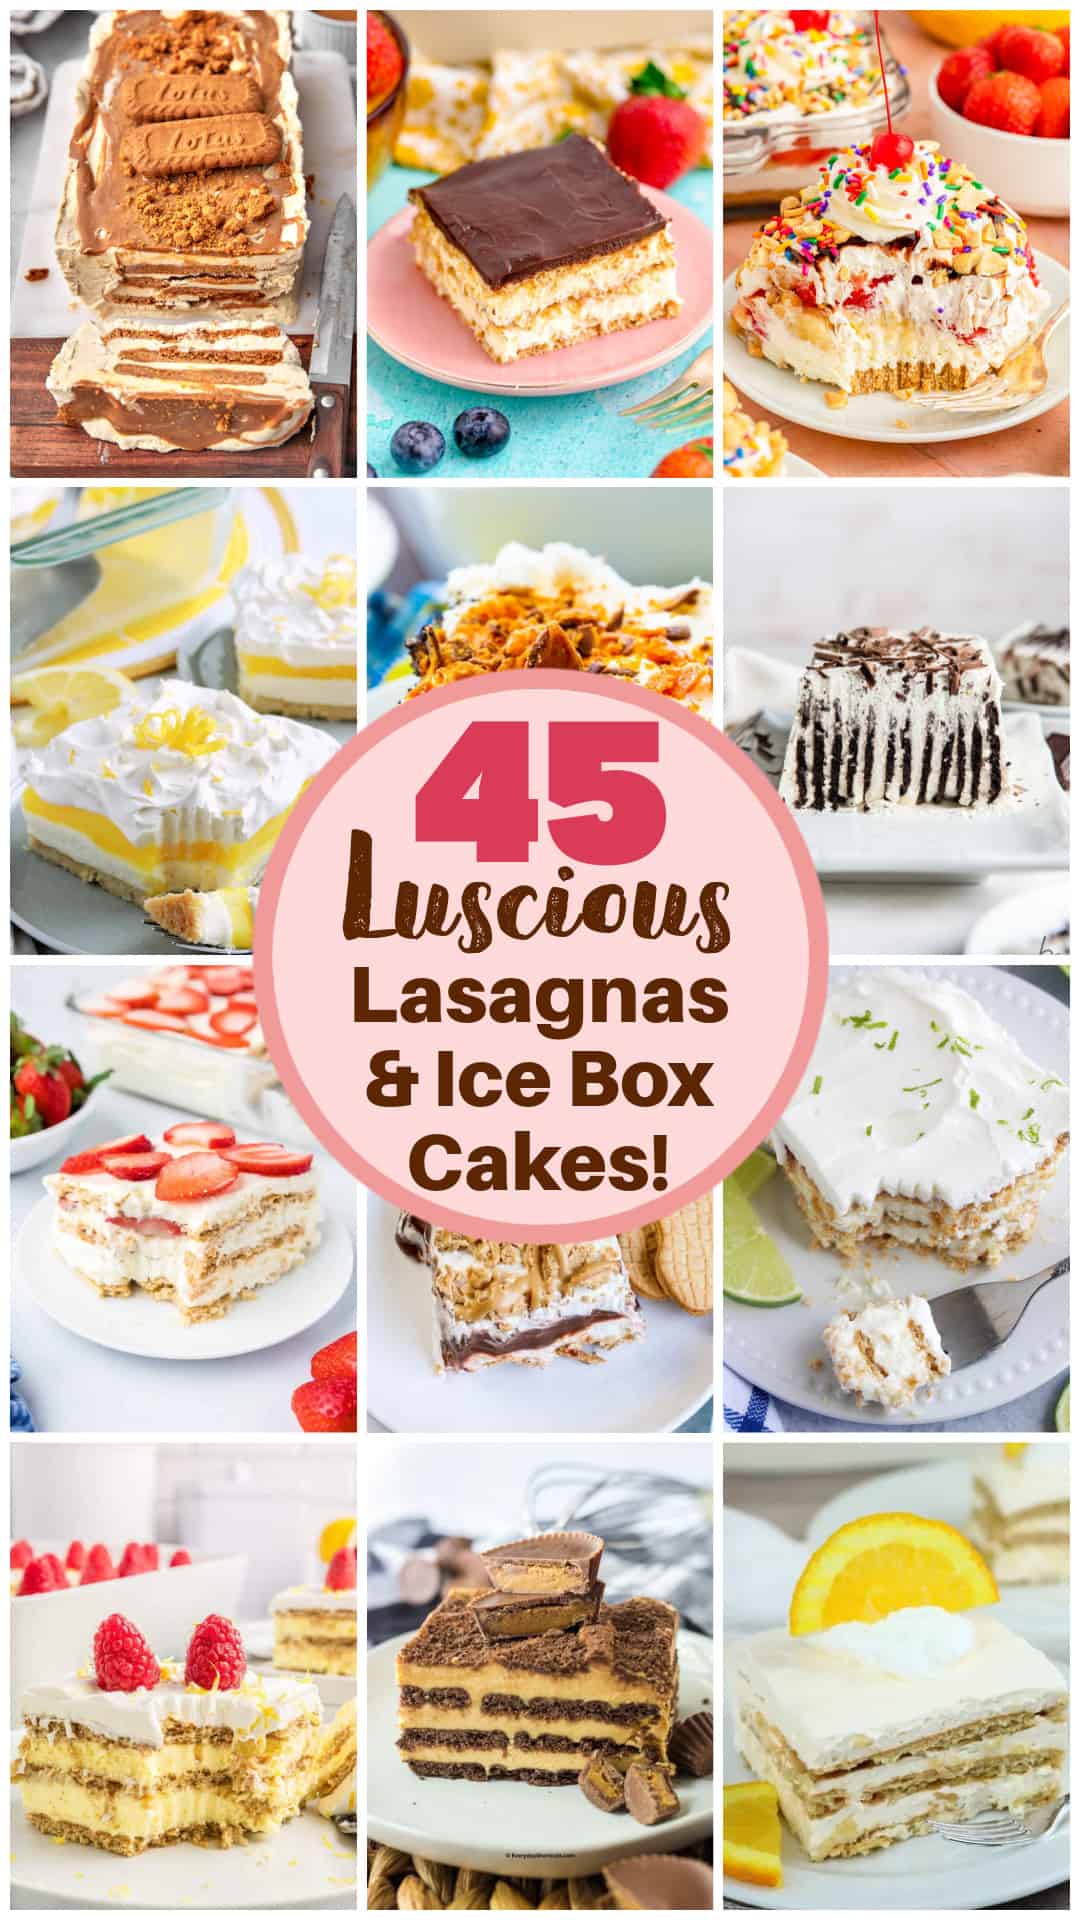 45 No Bake Luscious Lasagnas & Ice Box Cakes recipe